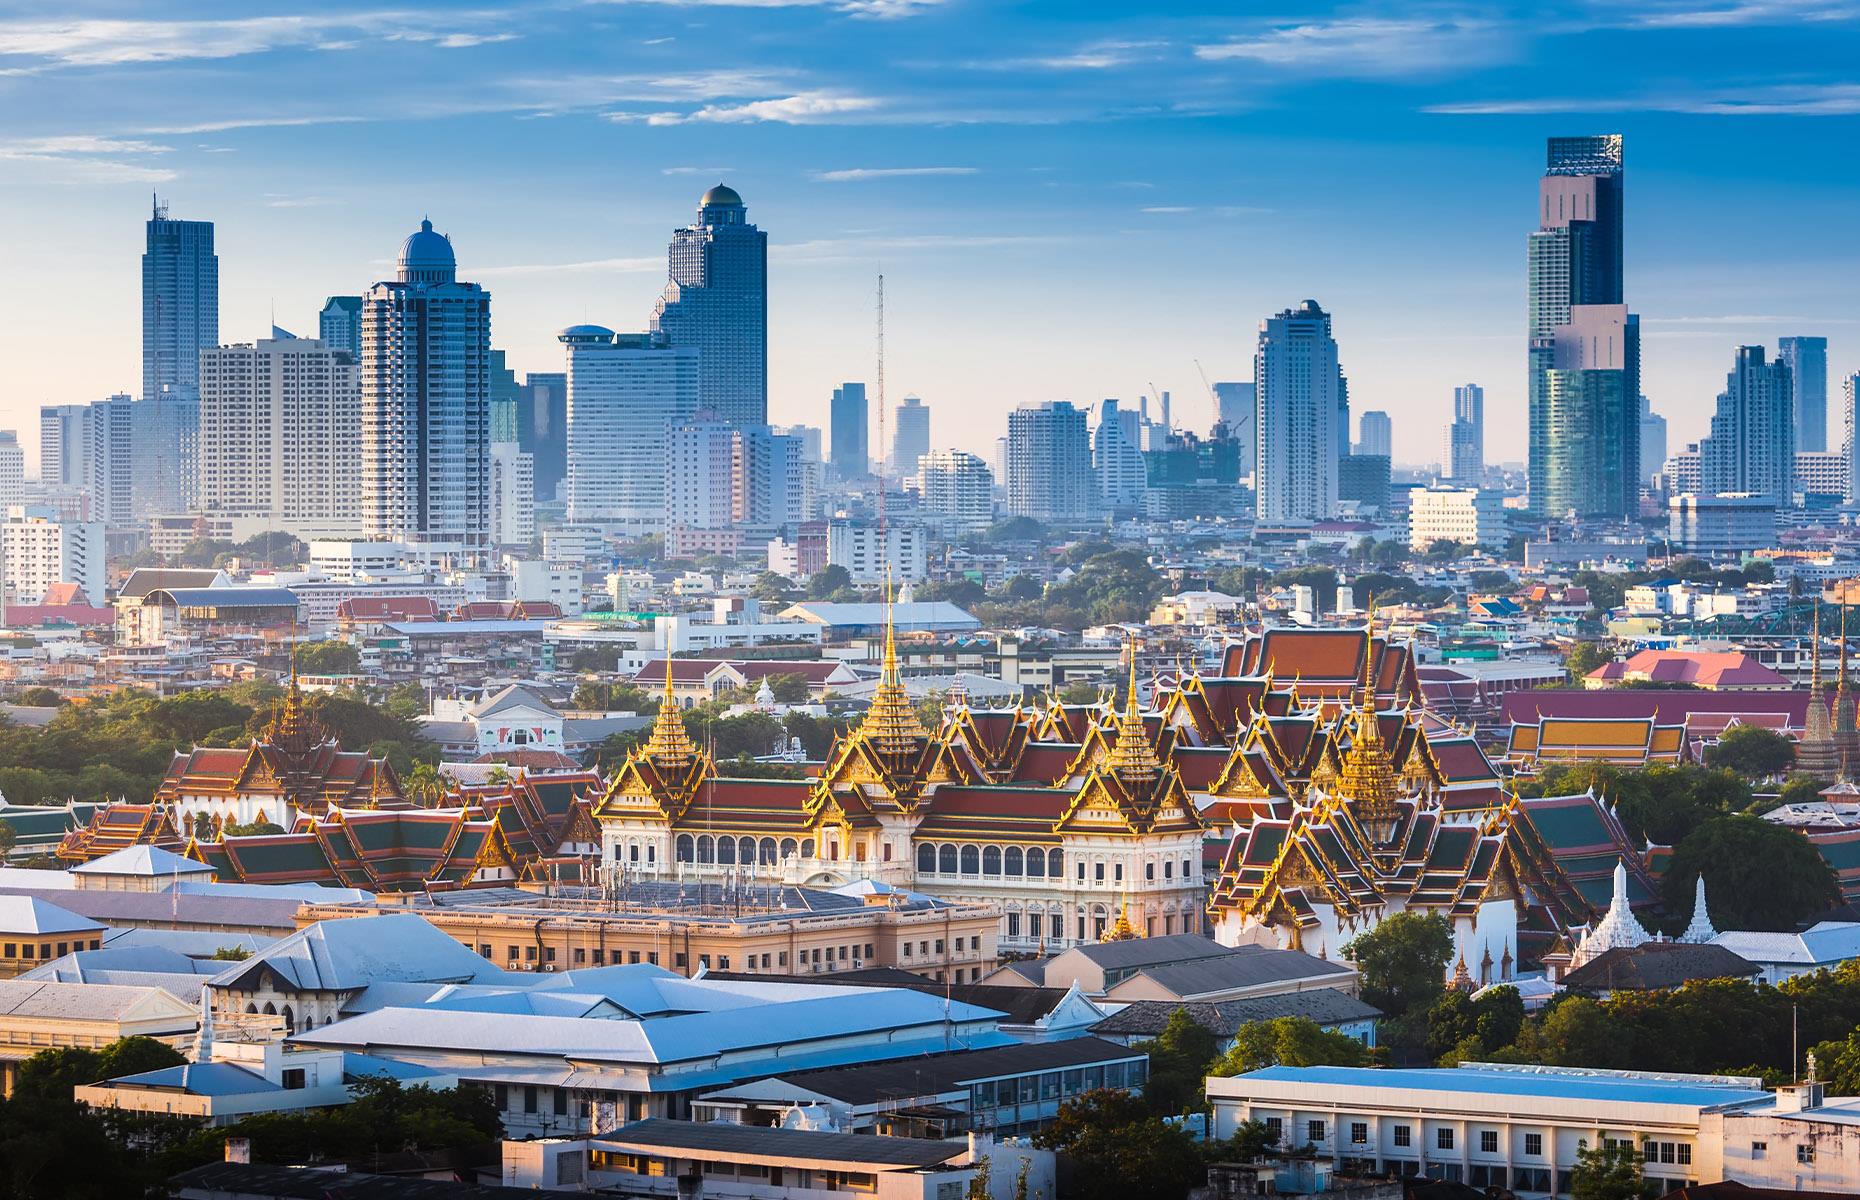 Thailand, $94.1 billion